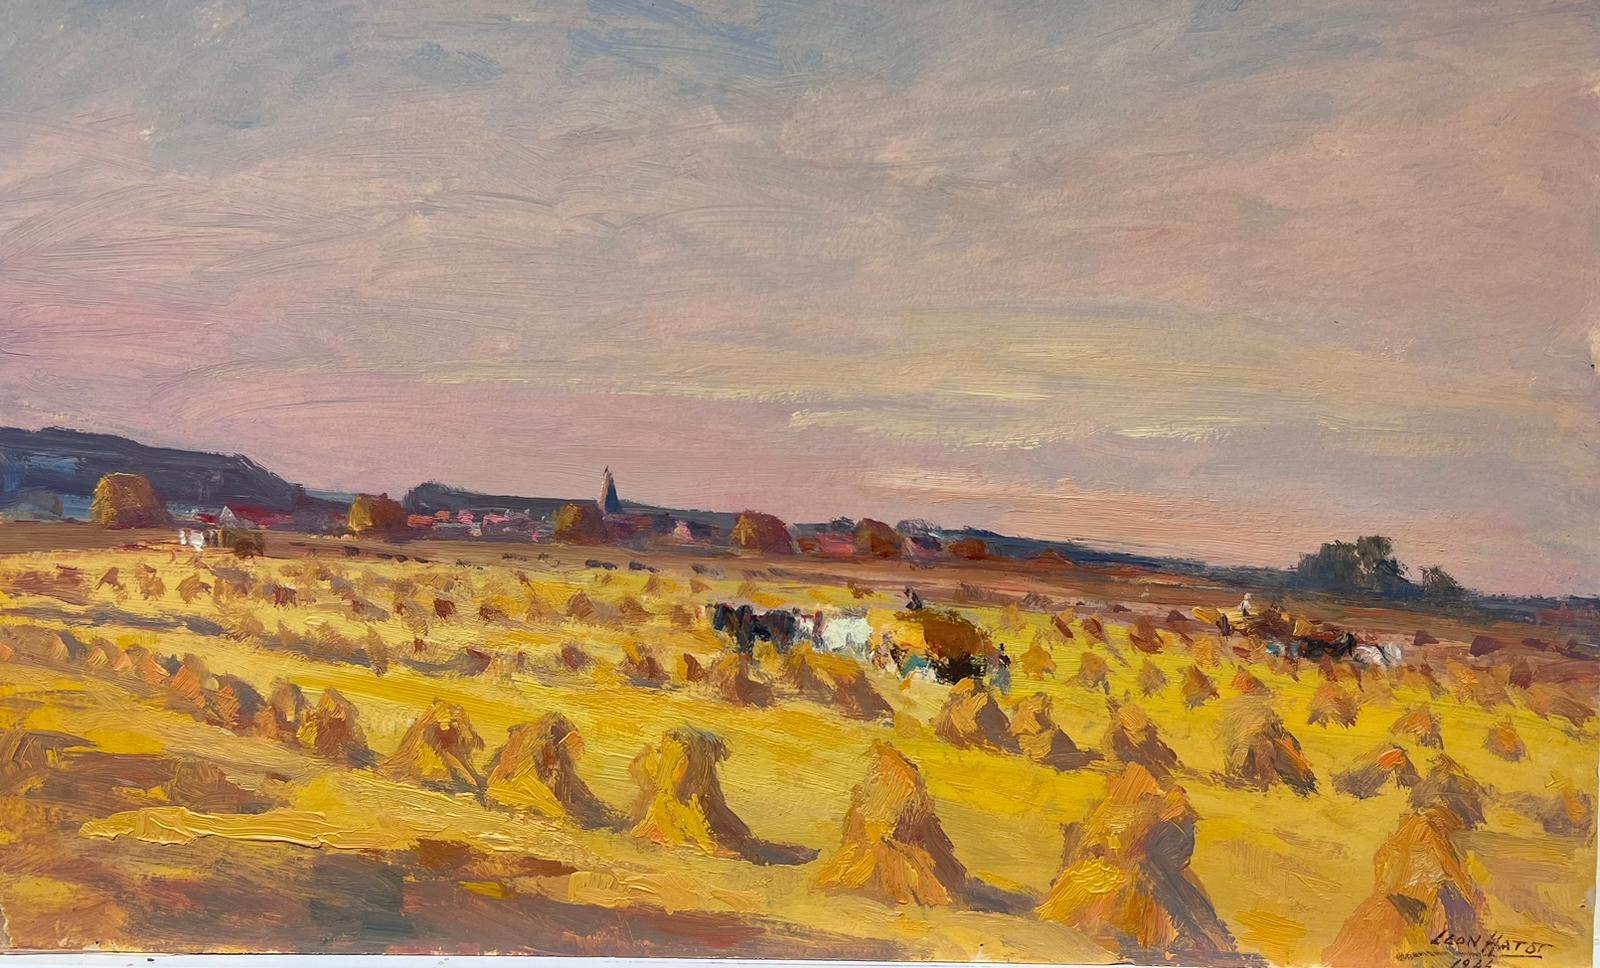 Landscape Painting Leon Hatot - Peinture à l'huile française ancienne d'un champ d'or de Hay Bales